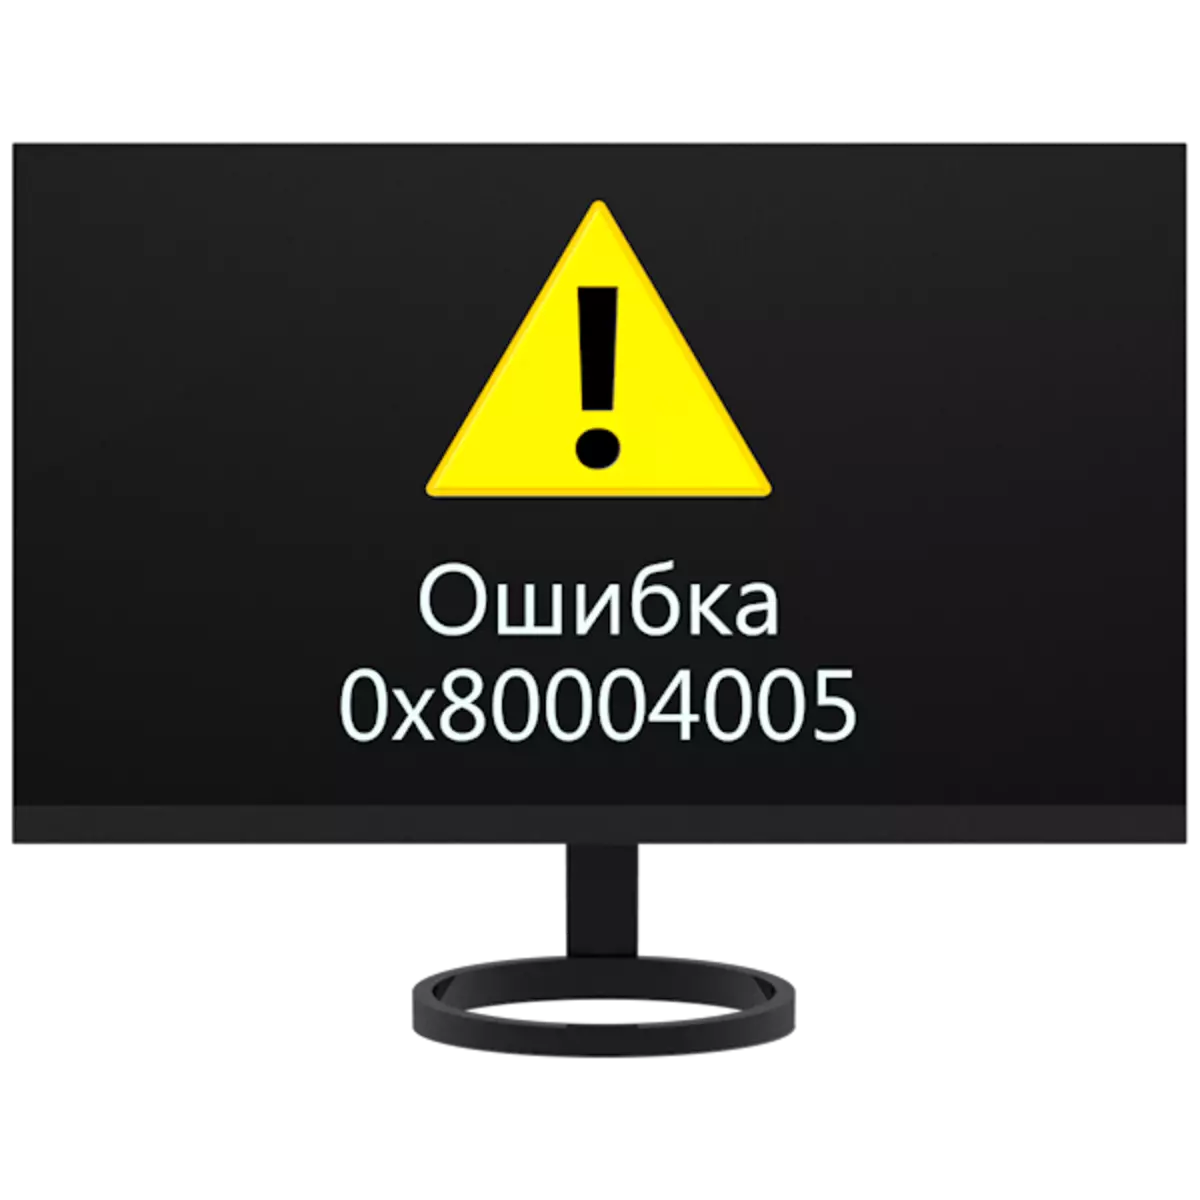 תיקון שגיאה 0x80004005 ב - Windows 7